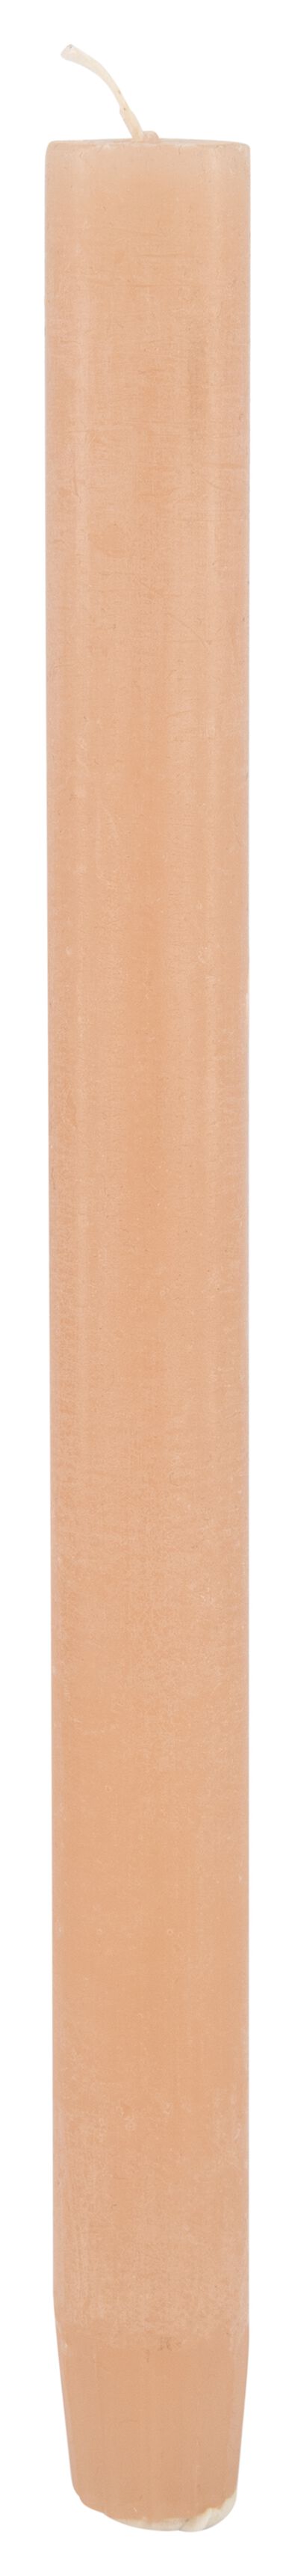 rustieke huishoudkaars 27x2.2 zalm roze 2.2 x 27 - 13501962 - HEMA